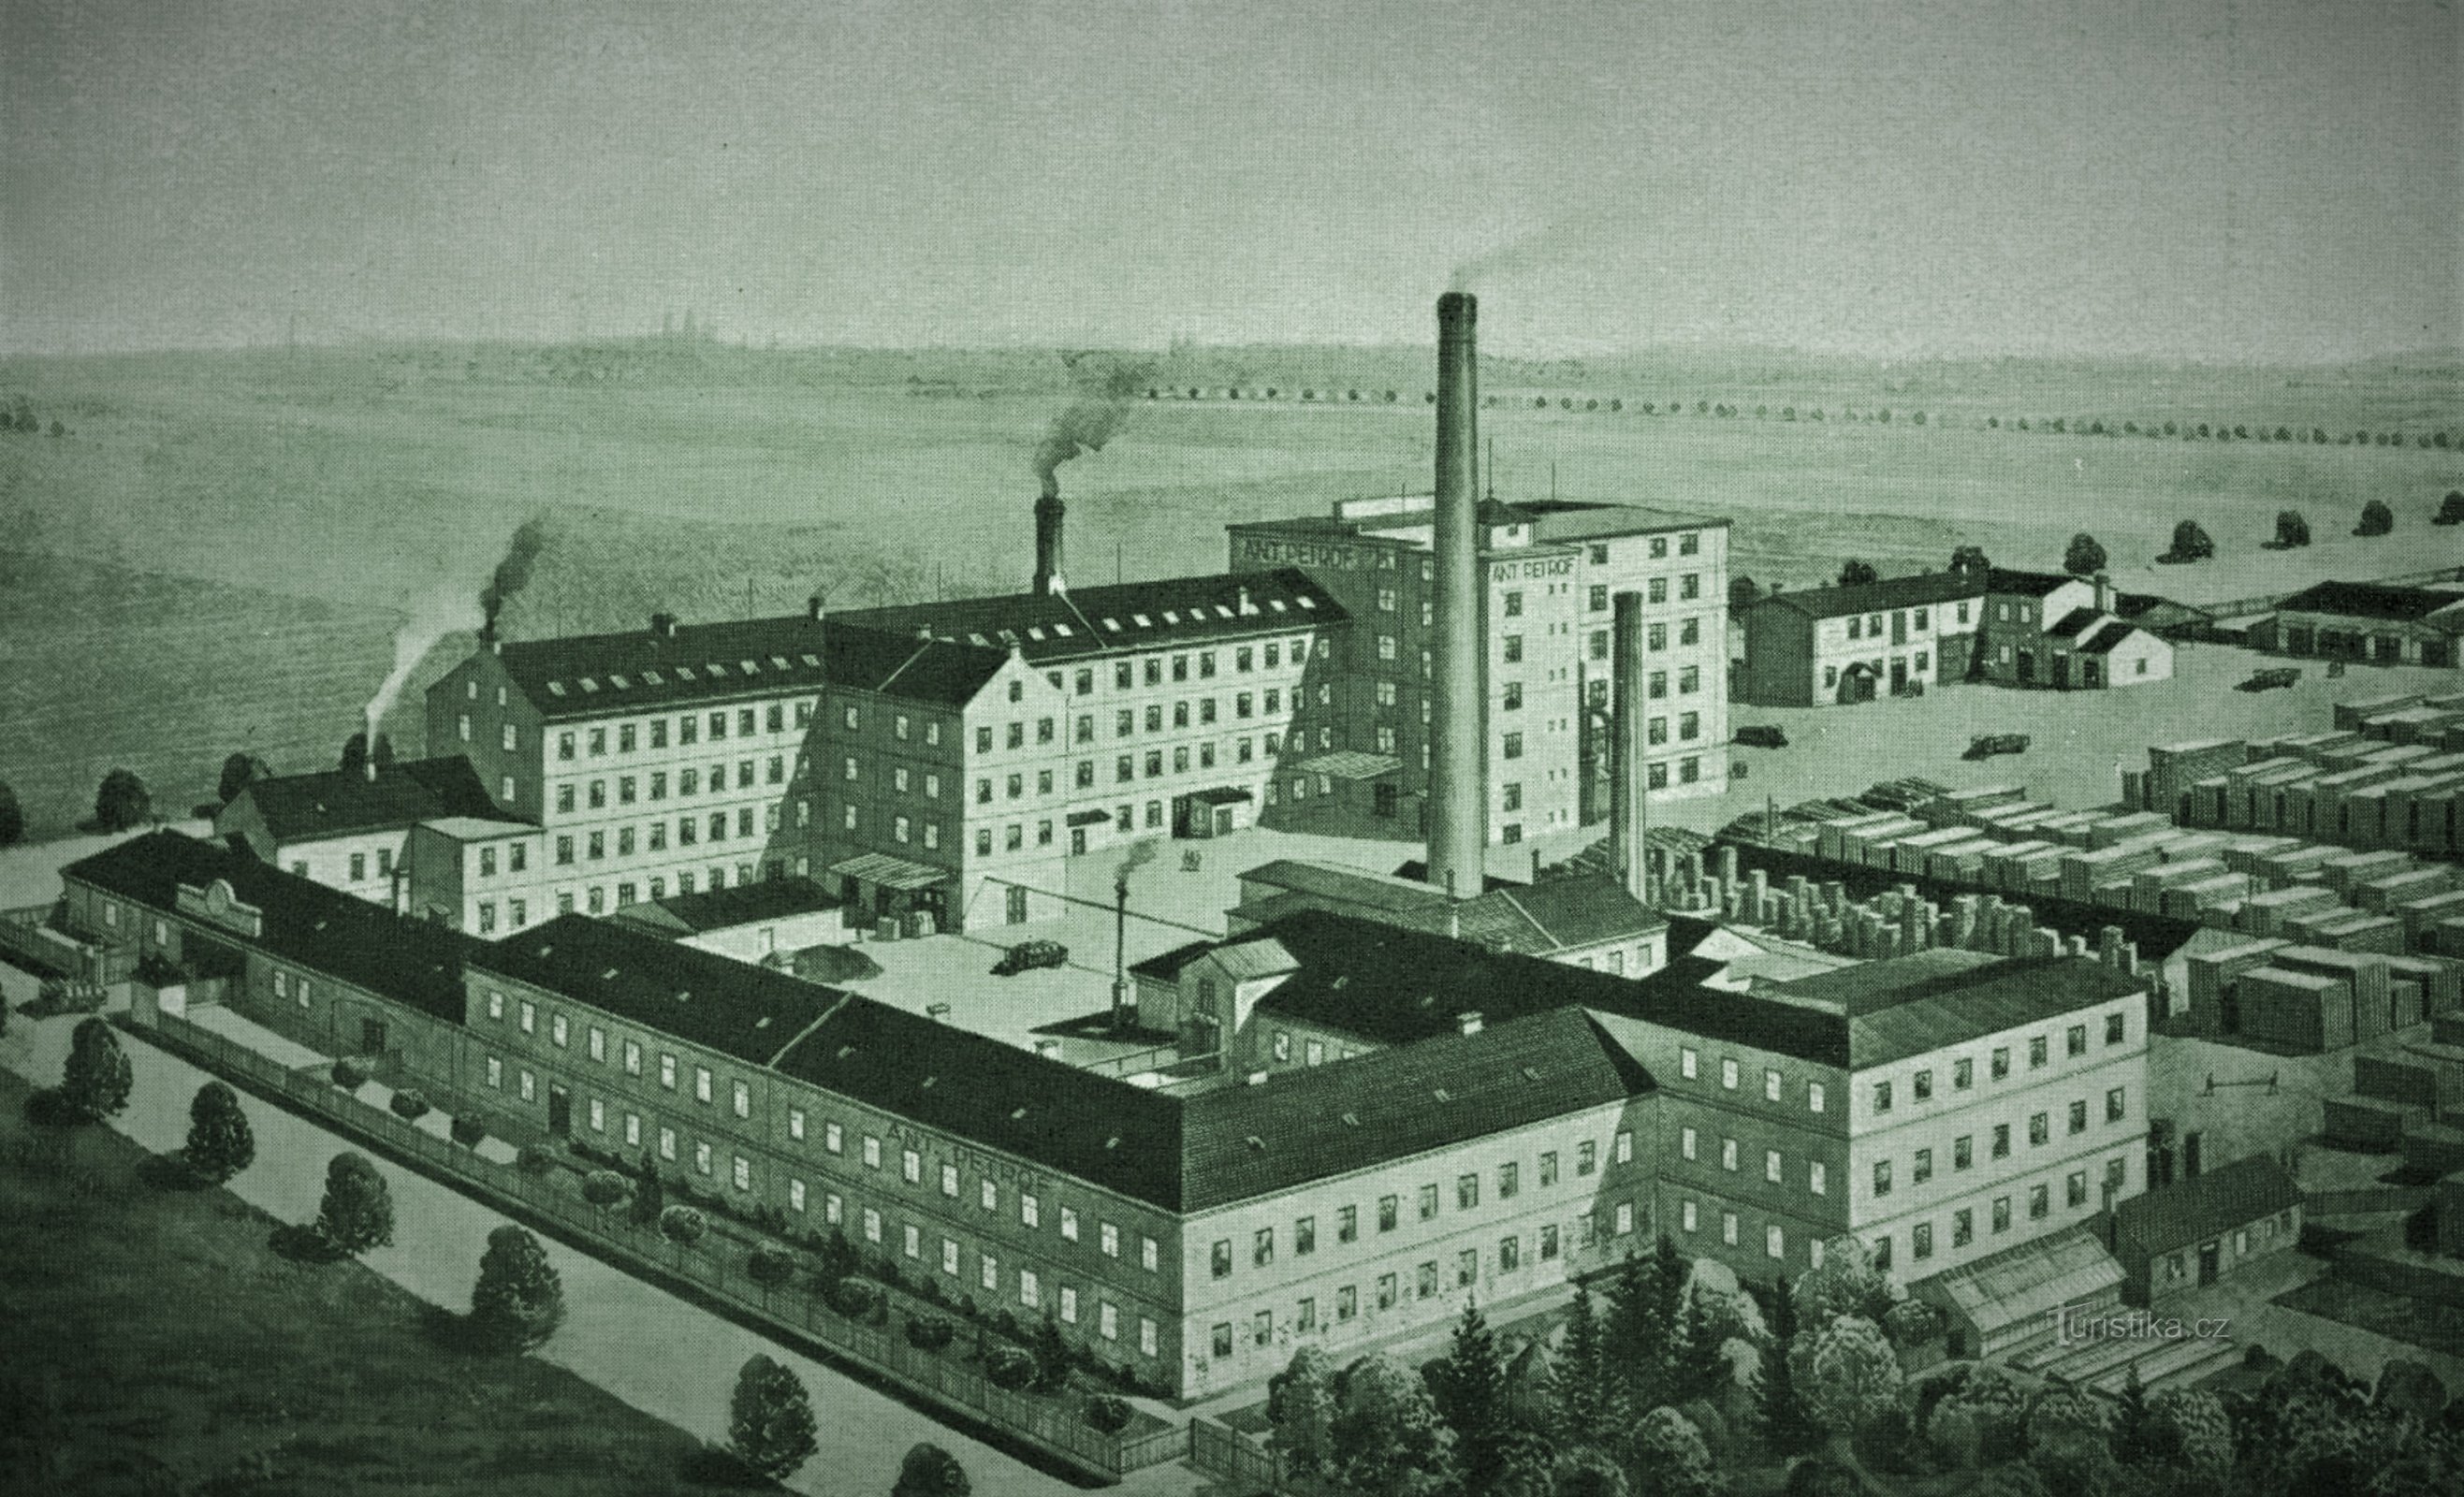 Petrof's fabriek in Nové Hradec Králové aan het begin van de 20e eeuw